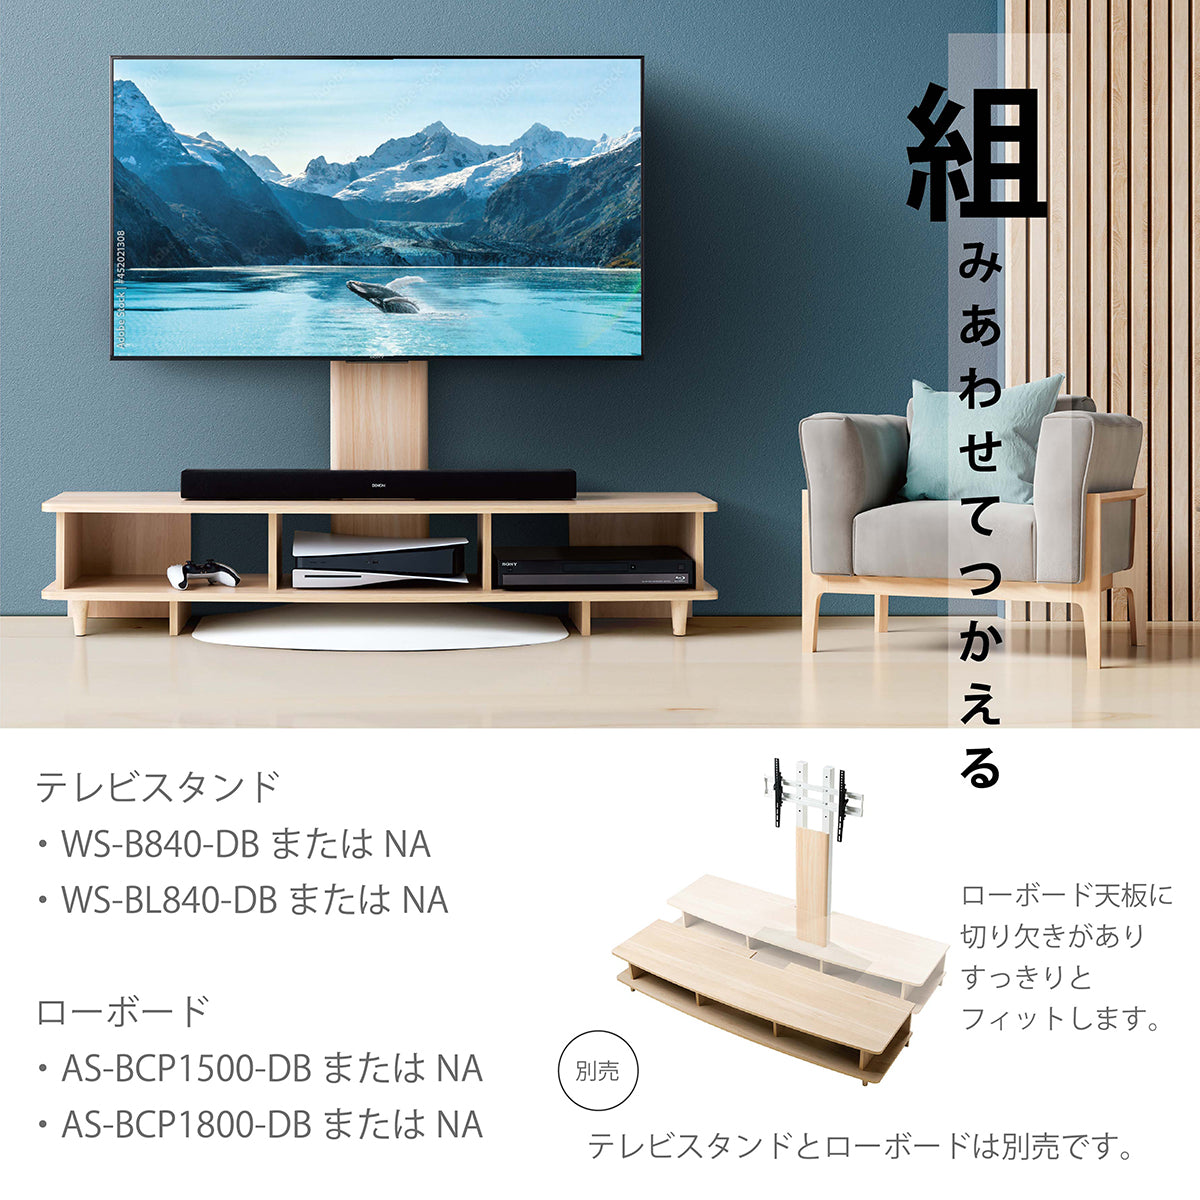 壁寄せテレビスタンド 自立タイプ TVボード インテリア 家具